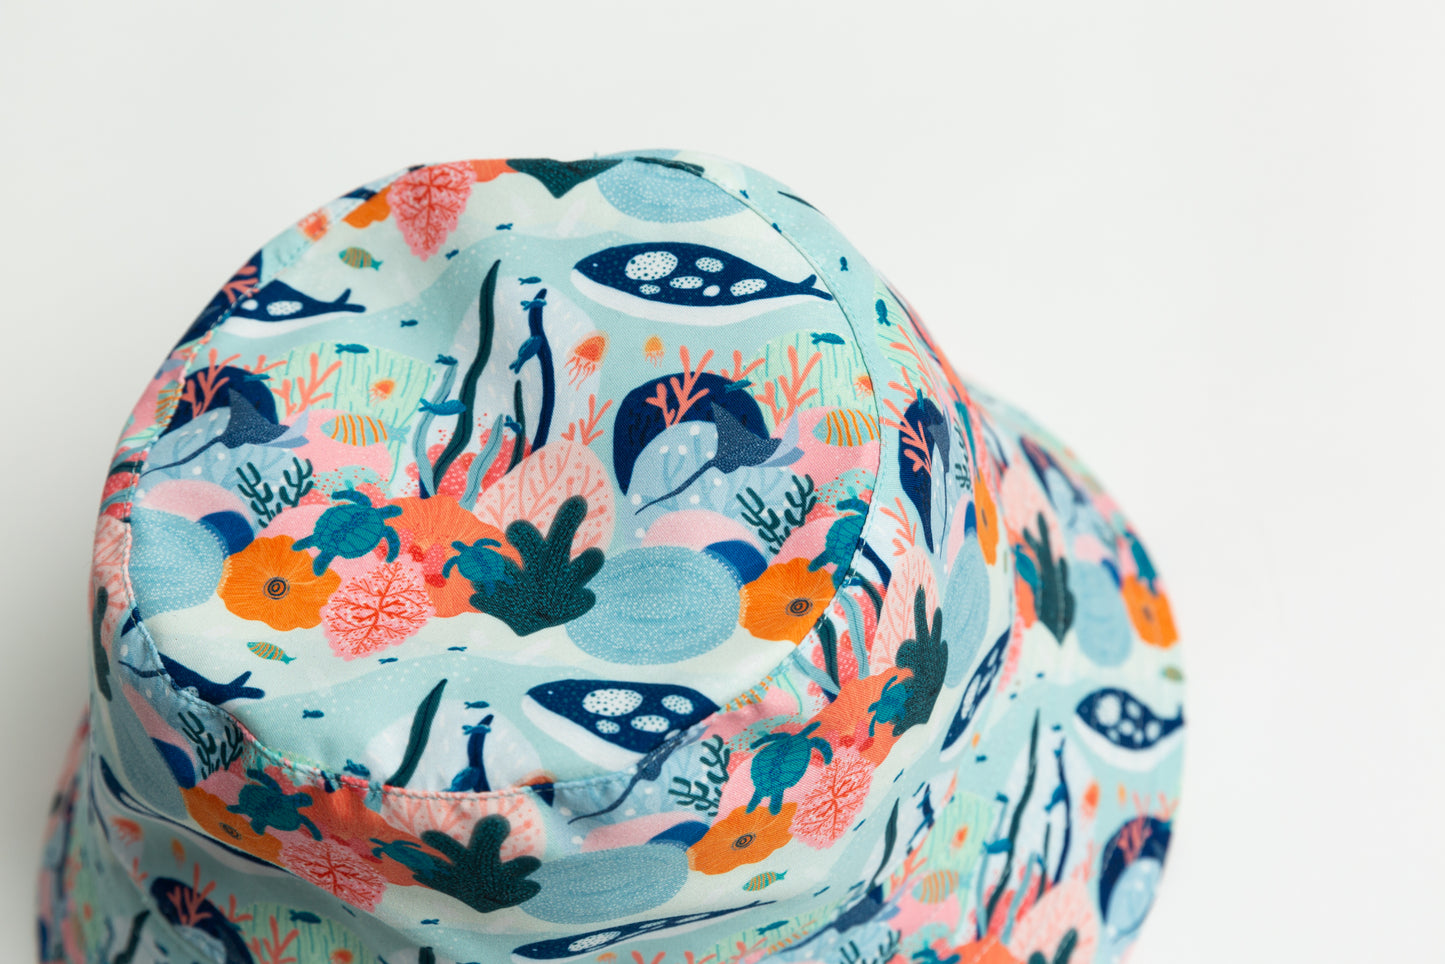 Reversible Bucket Hat (Ocean Print)